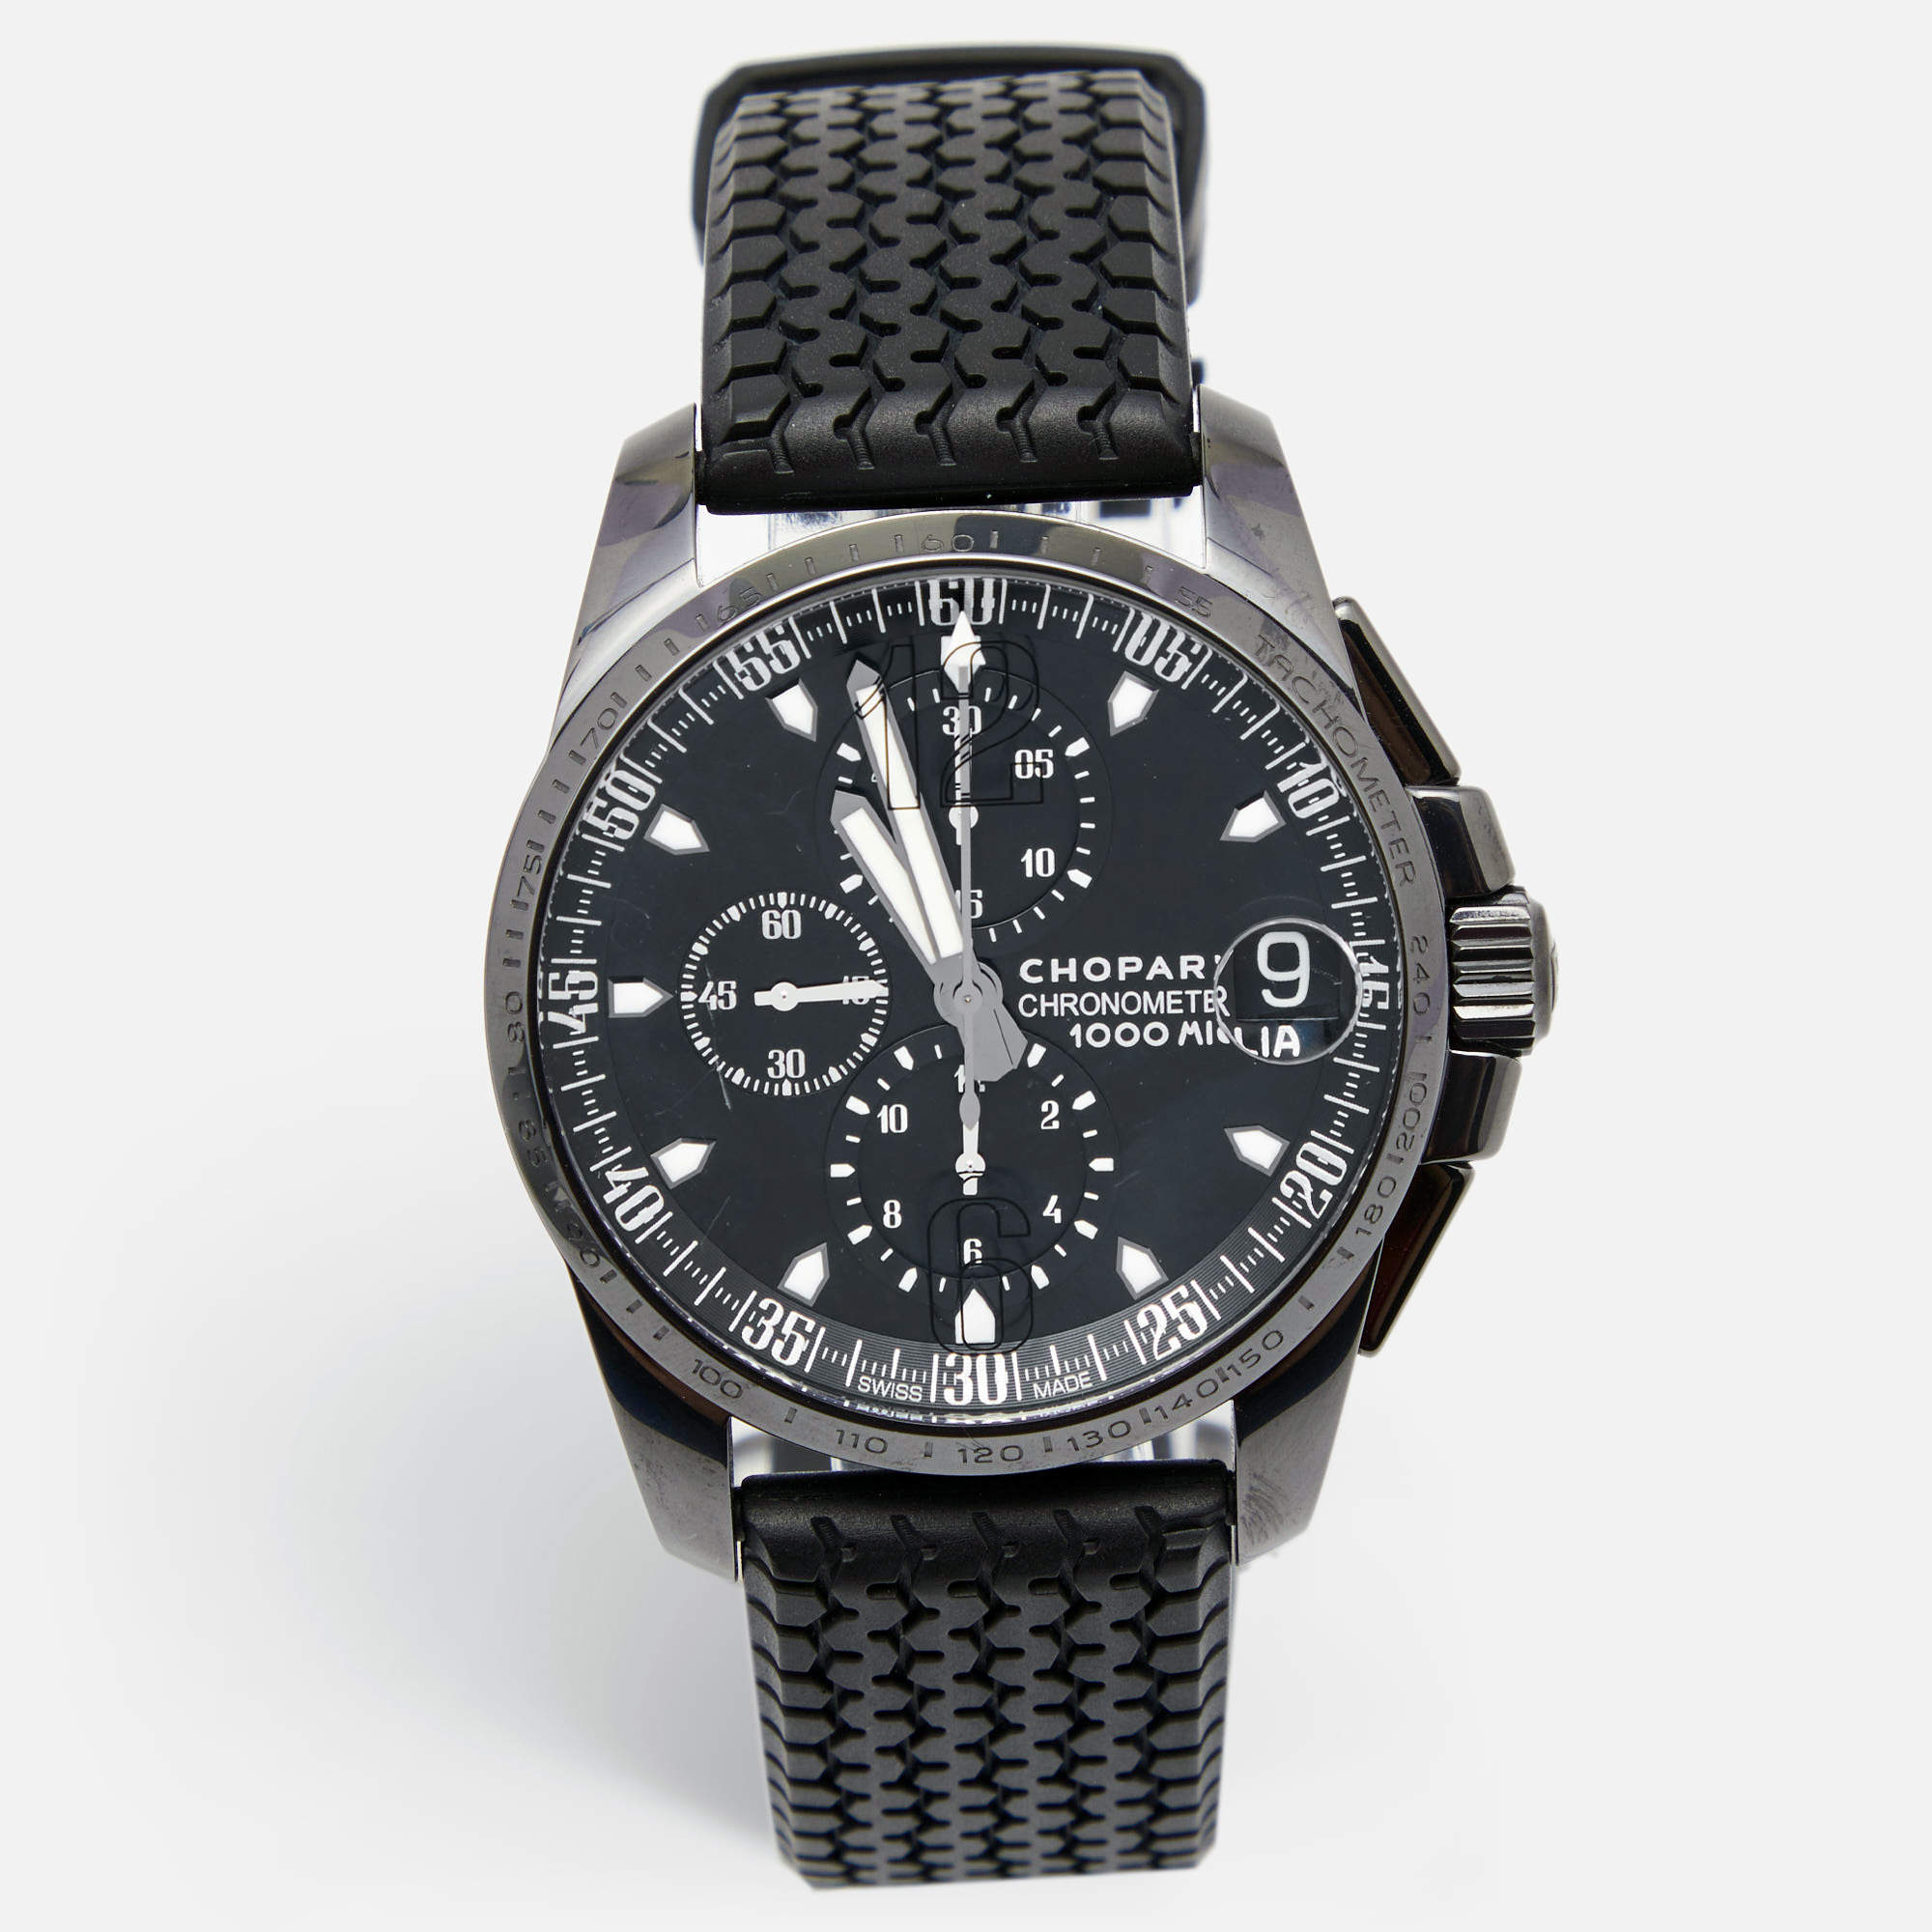 ساعة يد رجالية شوبارد ميلي ميغليا GT XL 168459-3022 ستانلس ستيل مطلي DL سوداء 44مم